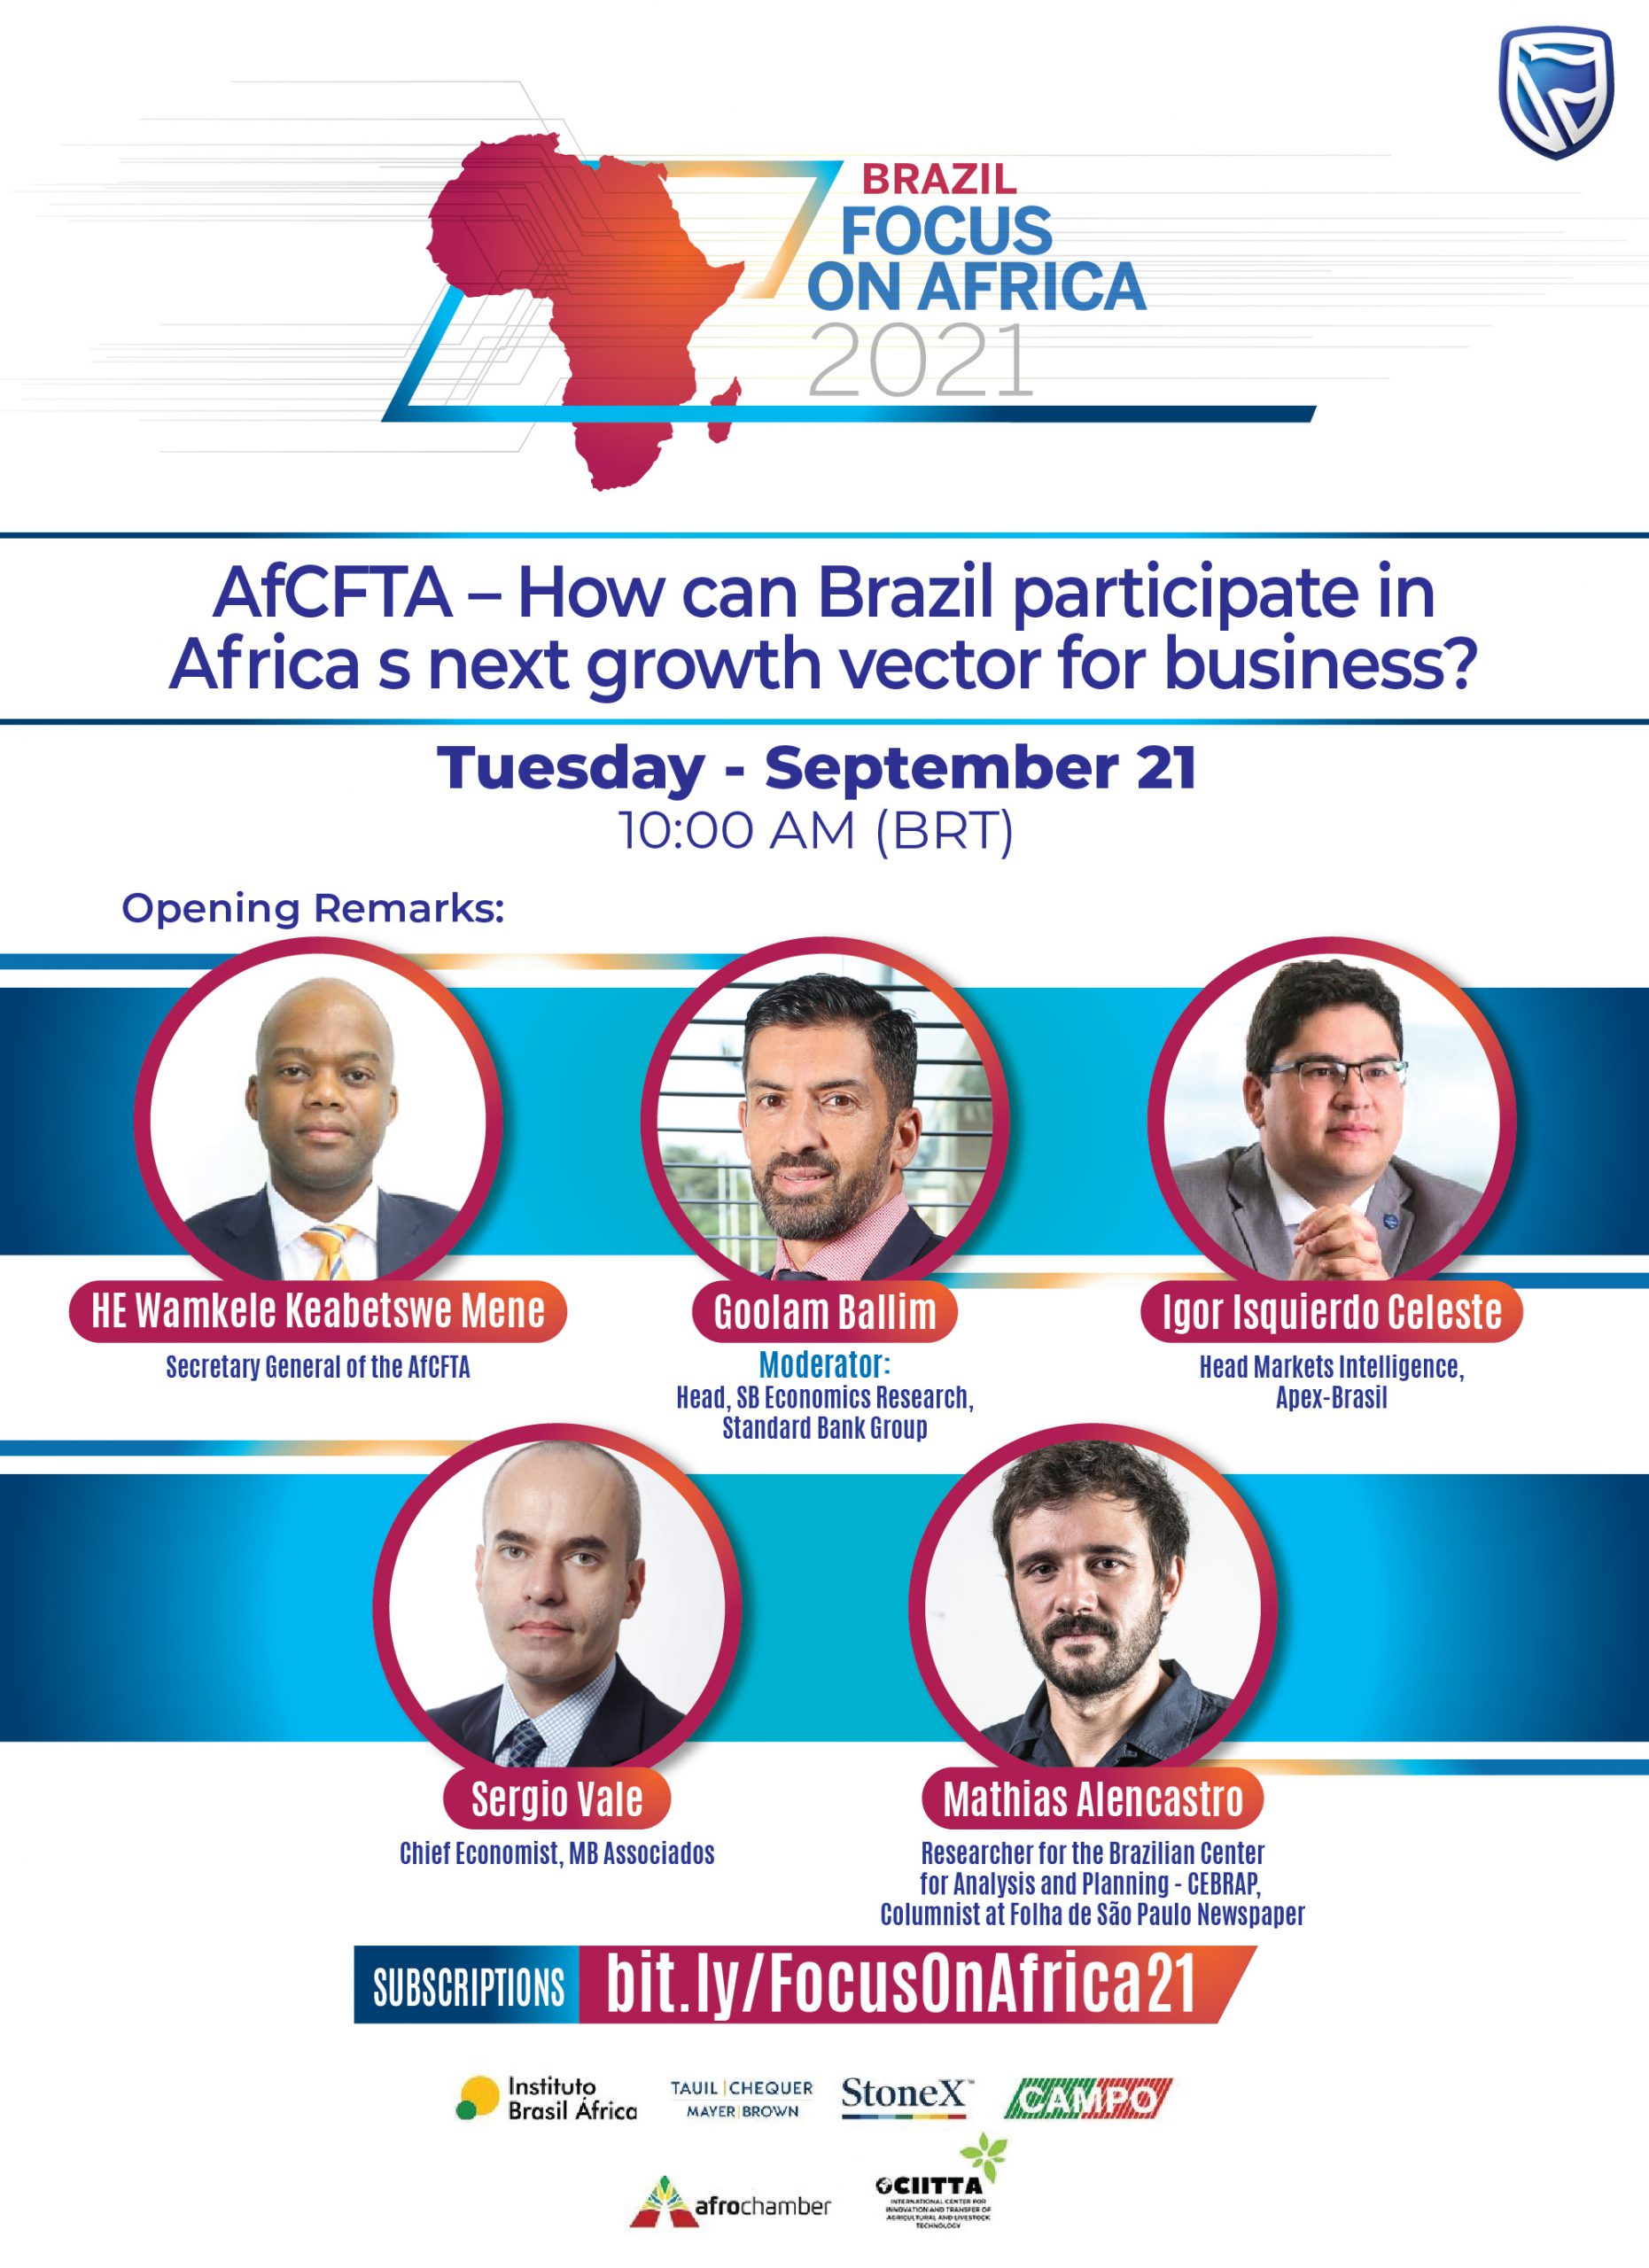 Conferência tratará de oportunidades de negócios e de investimentos entre Brasil e África